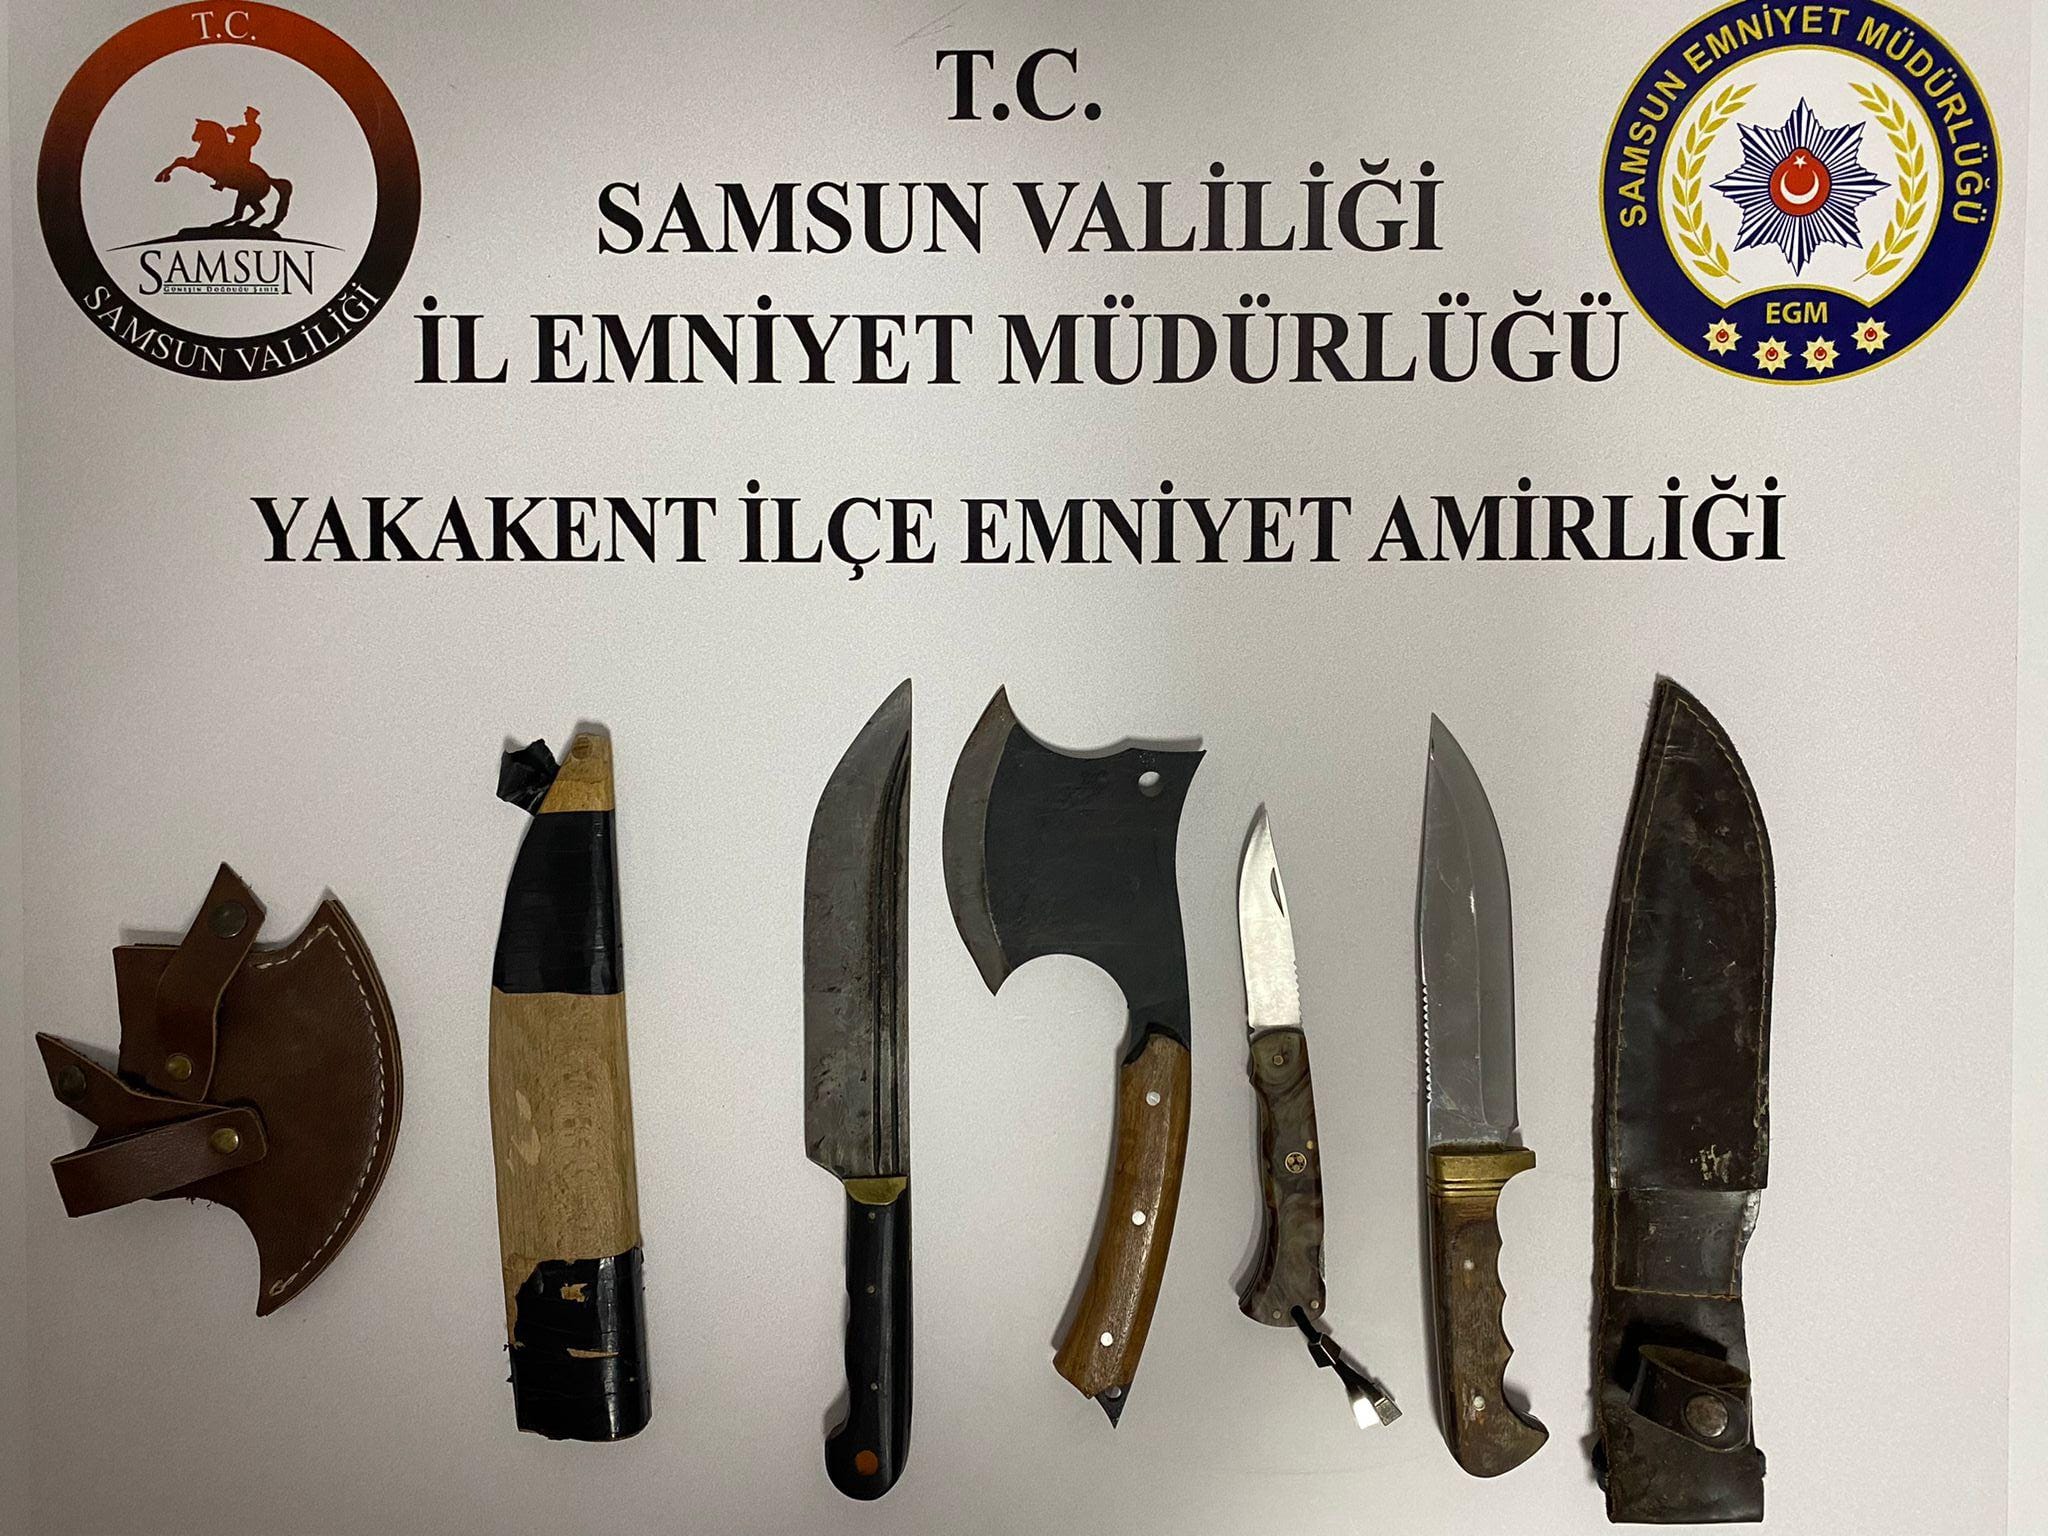 Samsun'da Bir araçta kesici aletler bulundu